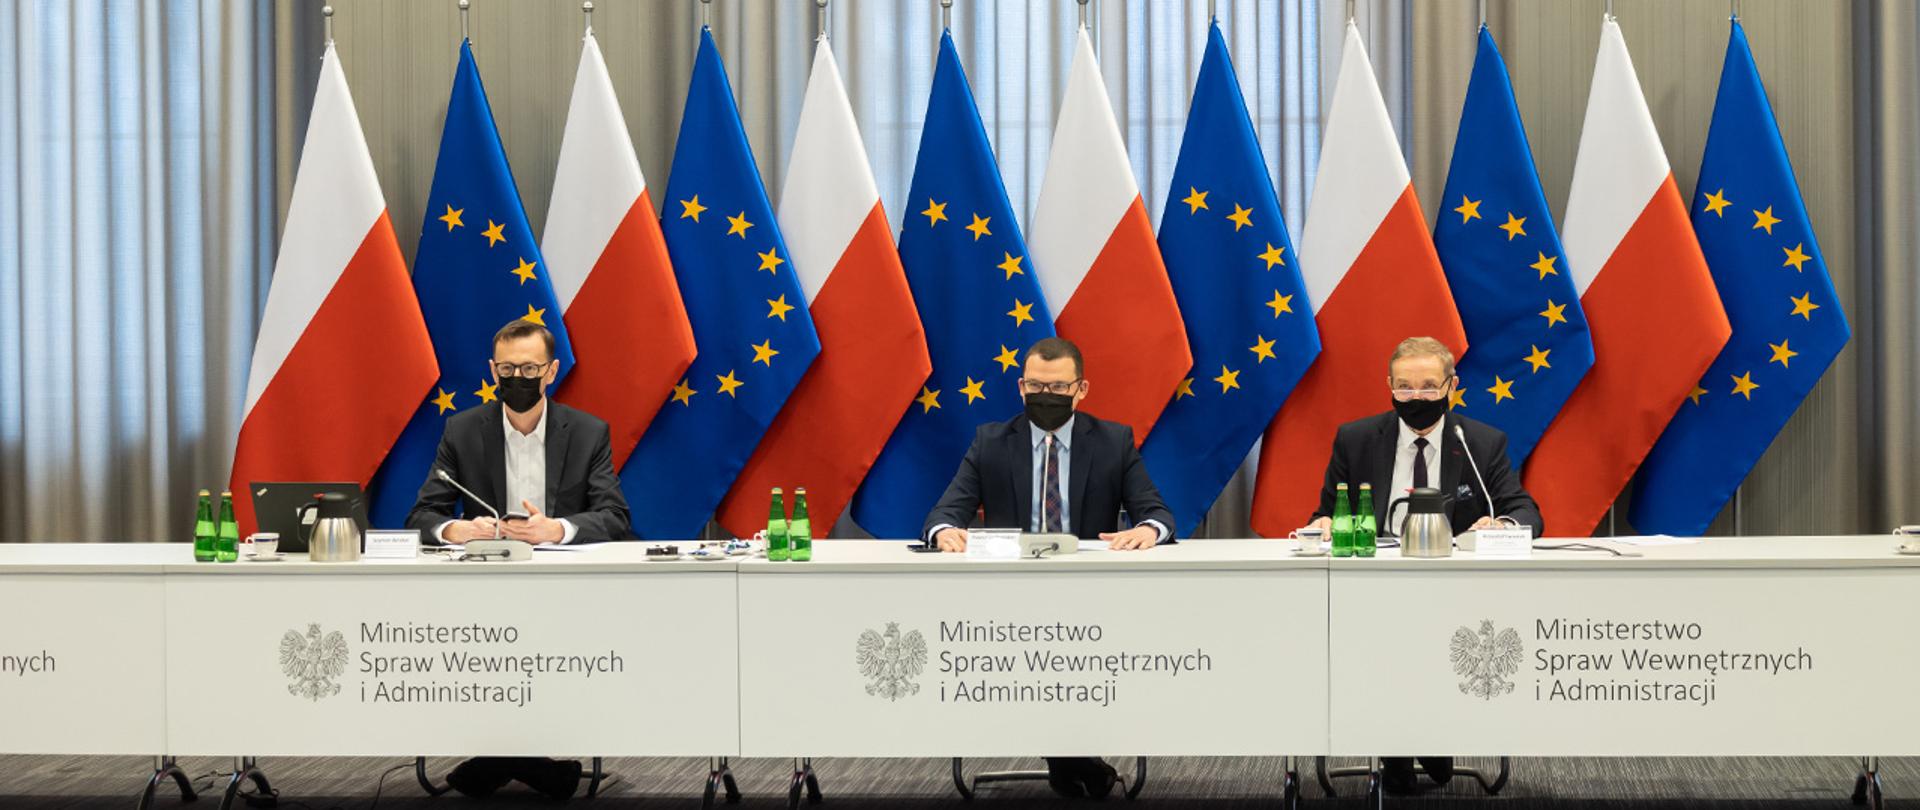 Na zdjęciu widać sekretarza komisji Szymona Wróbla, wiceministra Pawła Szefernakera i współprzewodniczącego KWRiST Krzysztofa Iwaniuka.